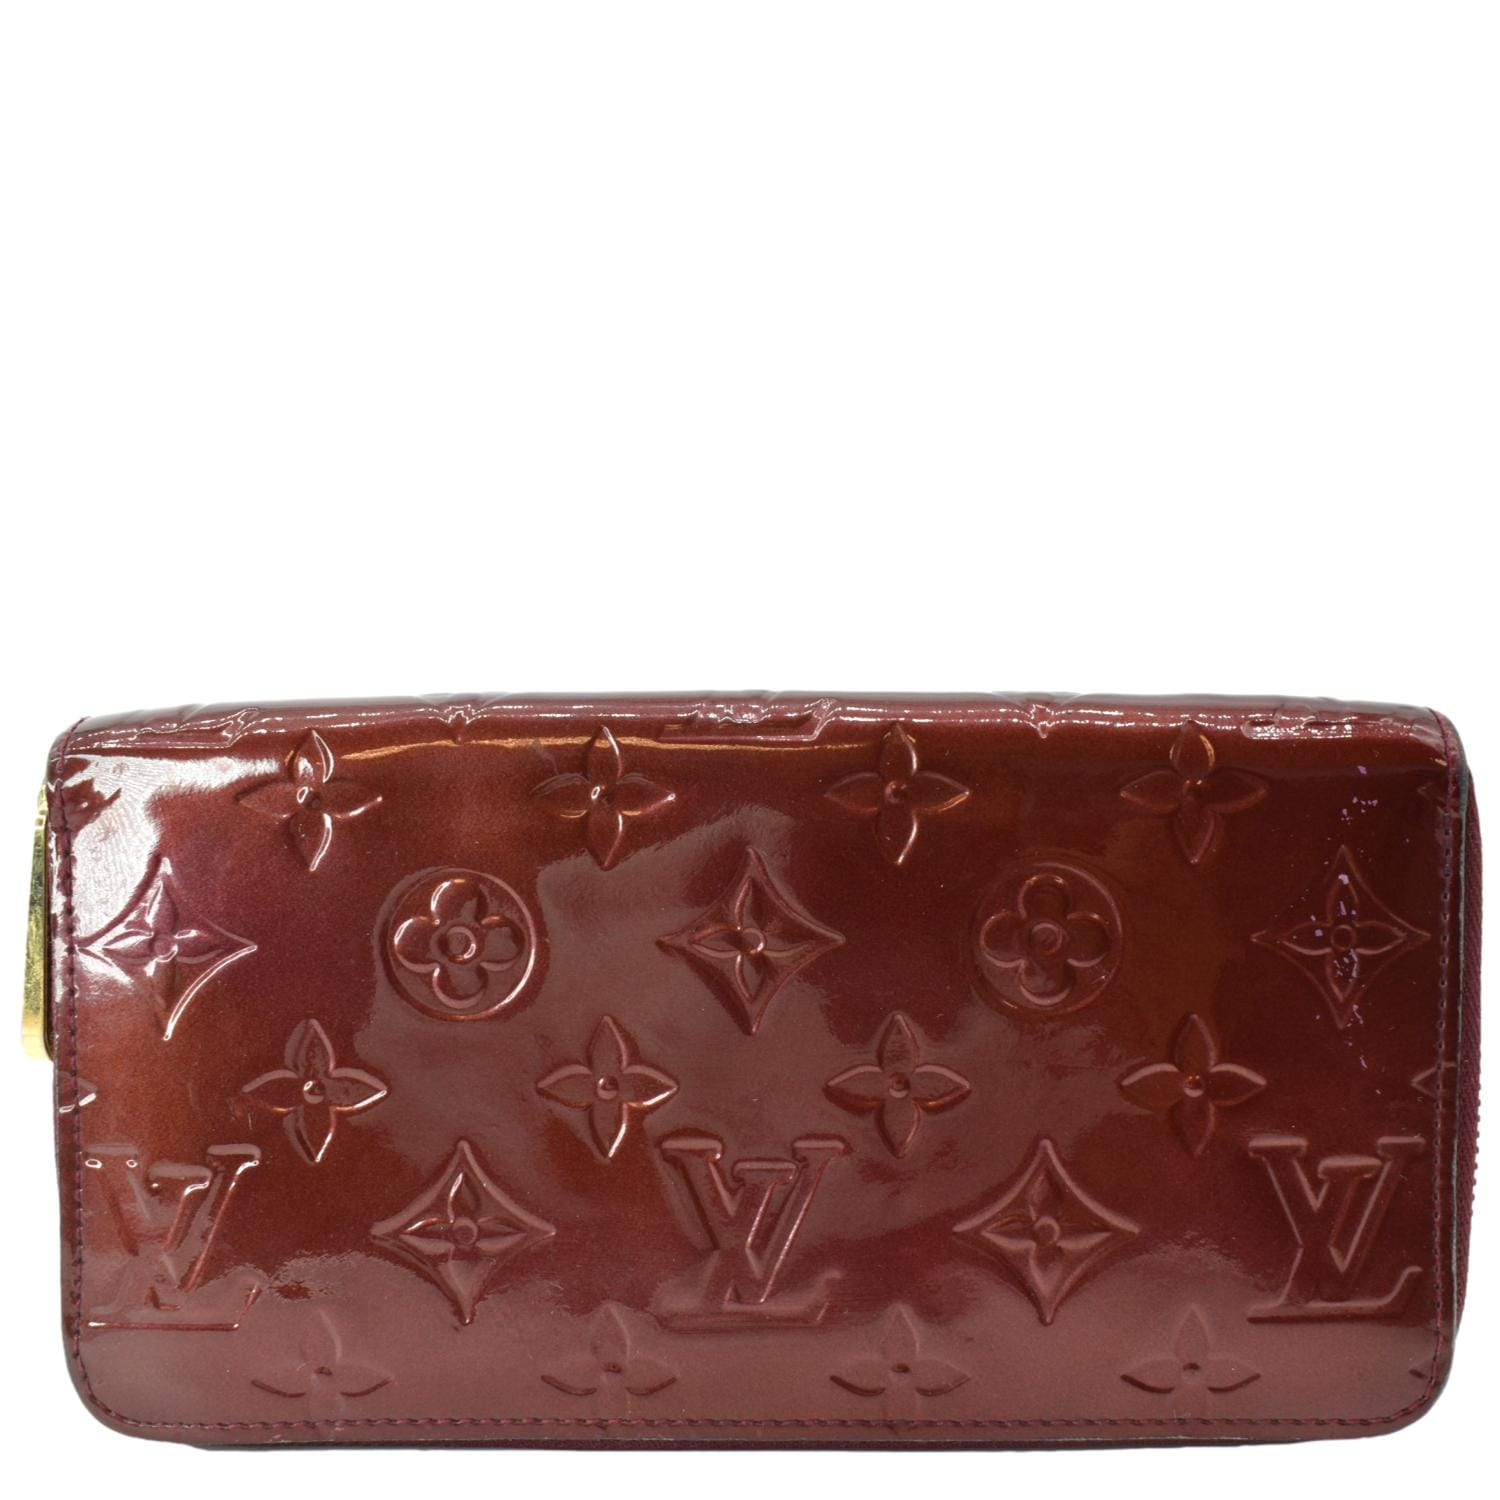 Louis Vuitton Zippy Pomme D'amour Monogram Vernis Wallet